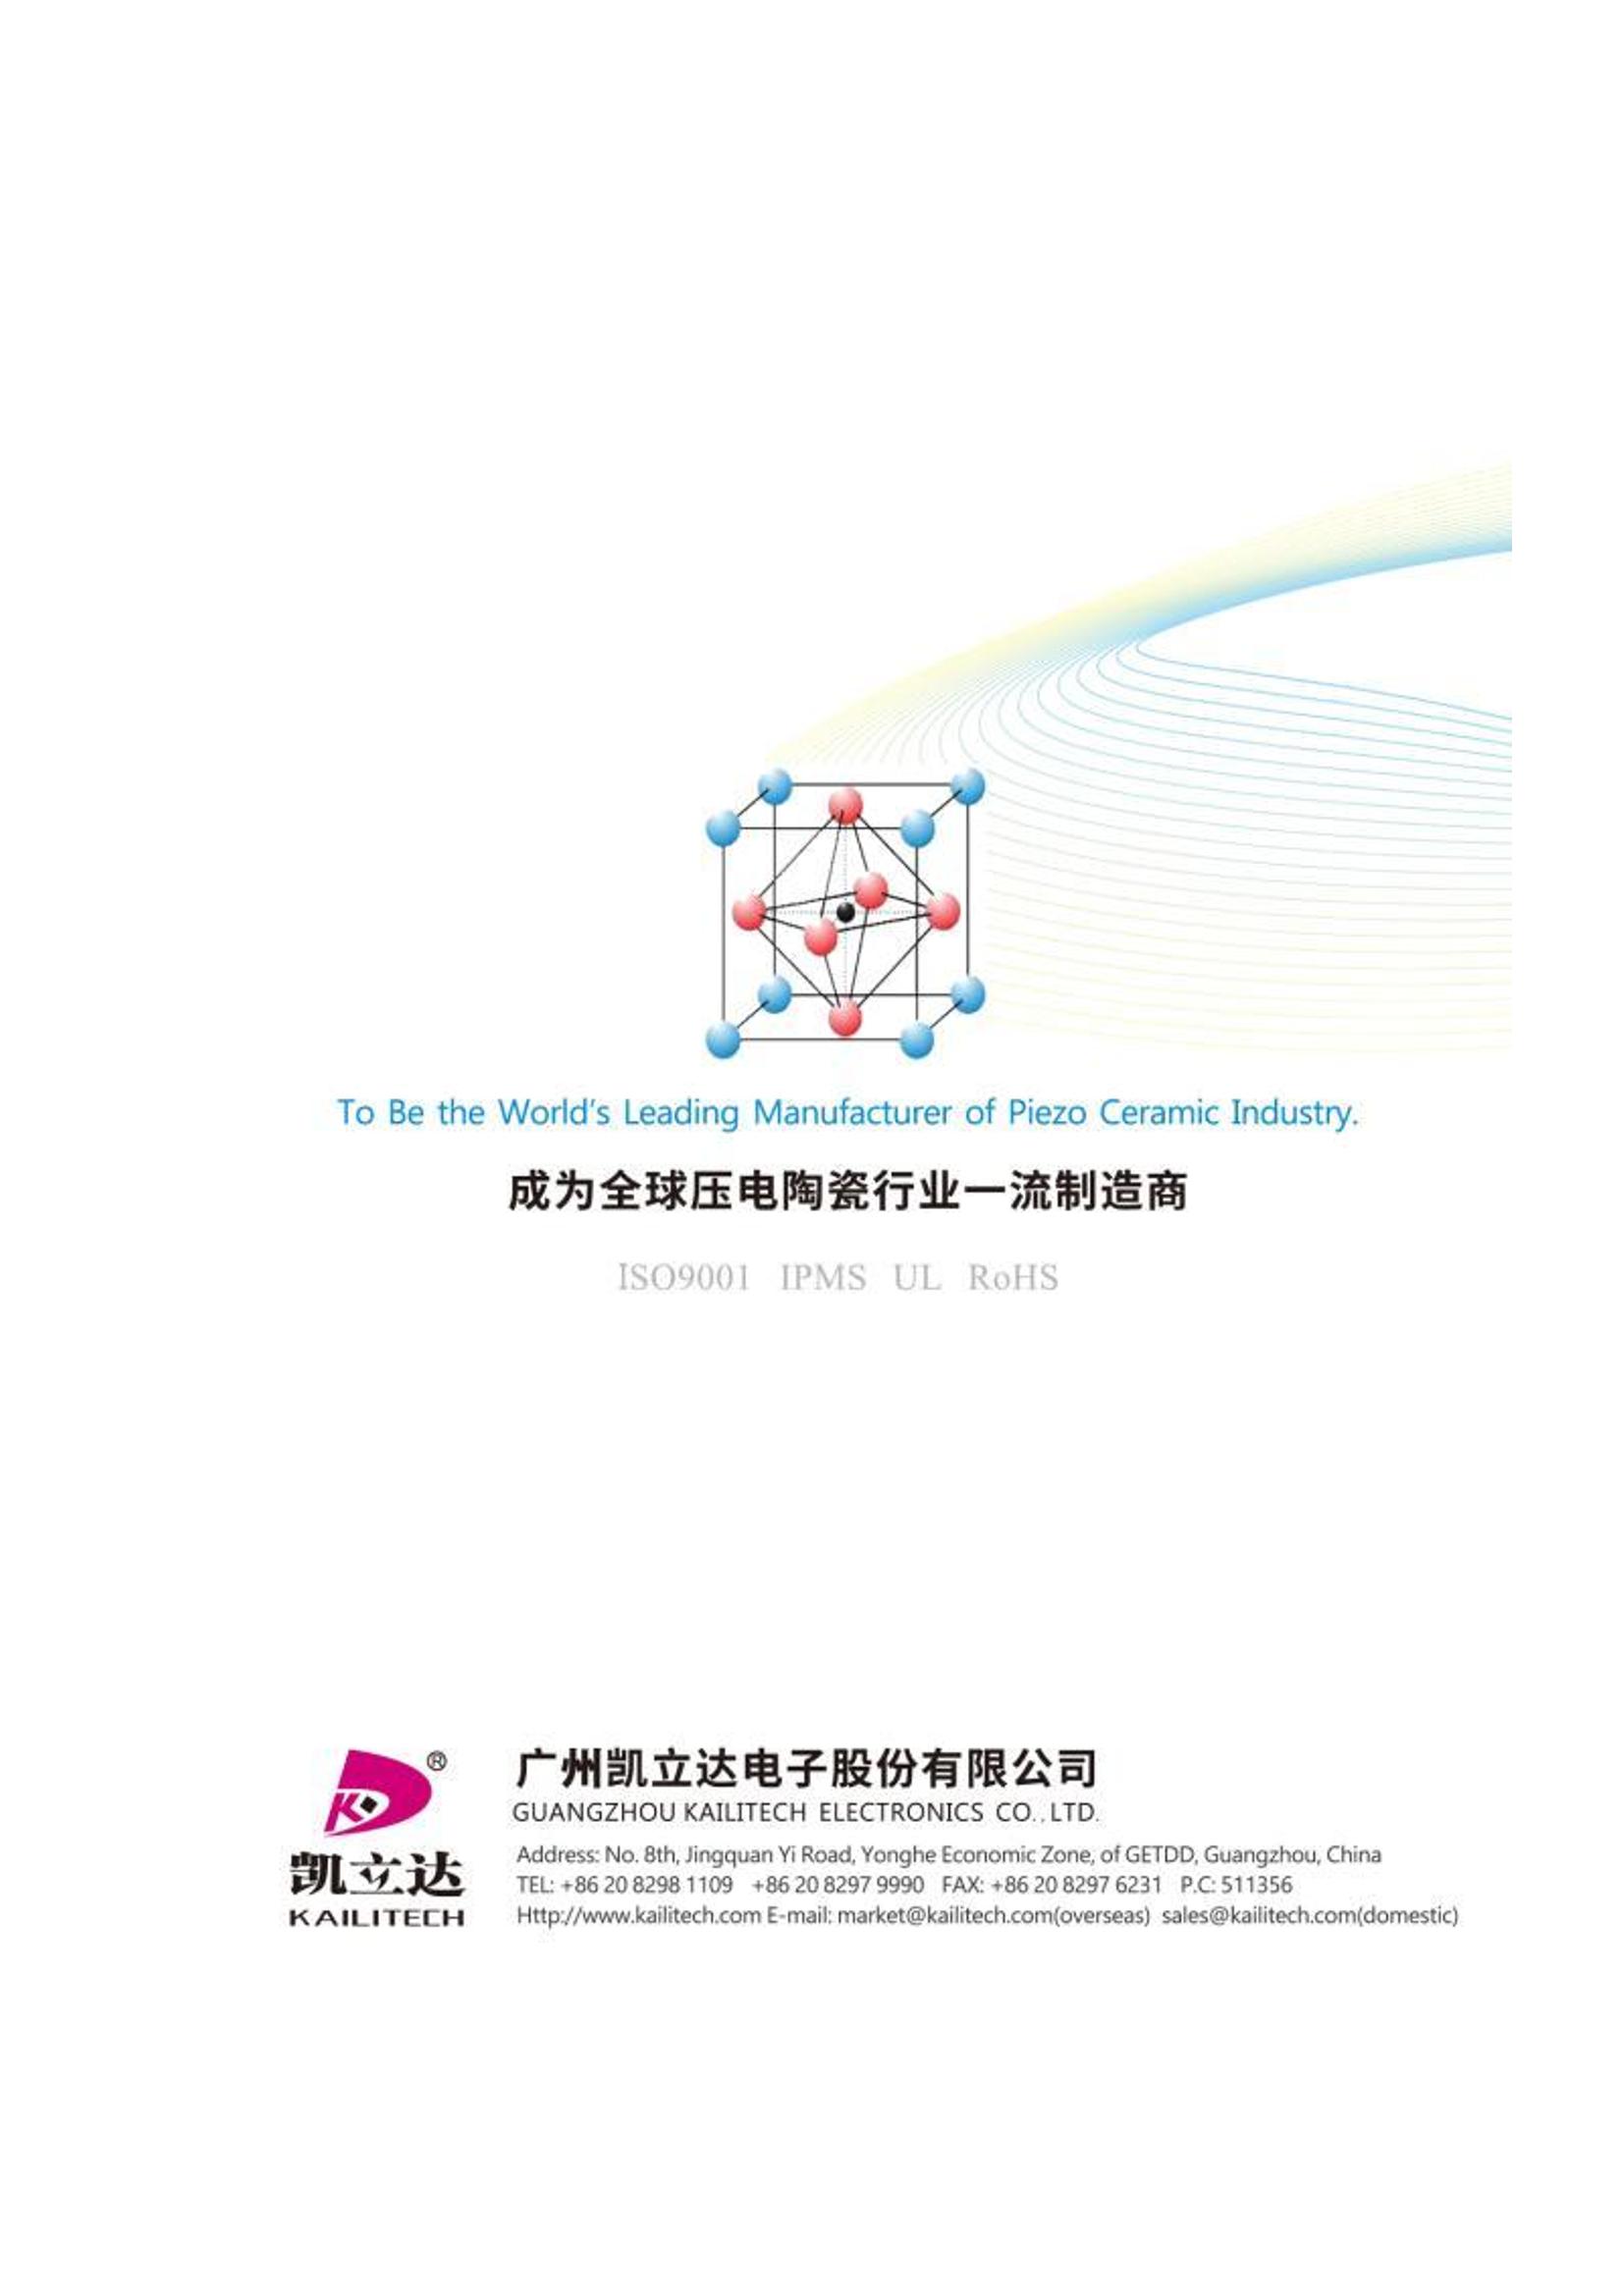 Guangzhou Kailitech Brochure-2020_29.jpg